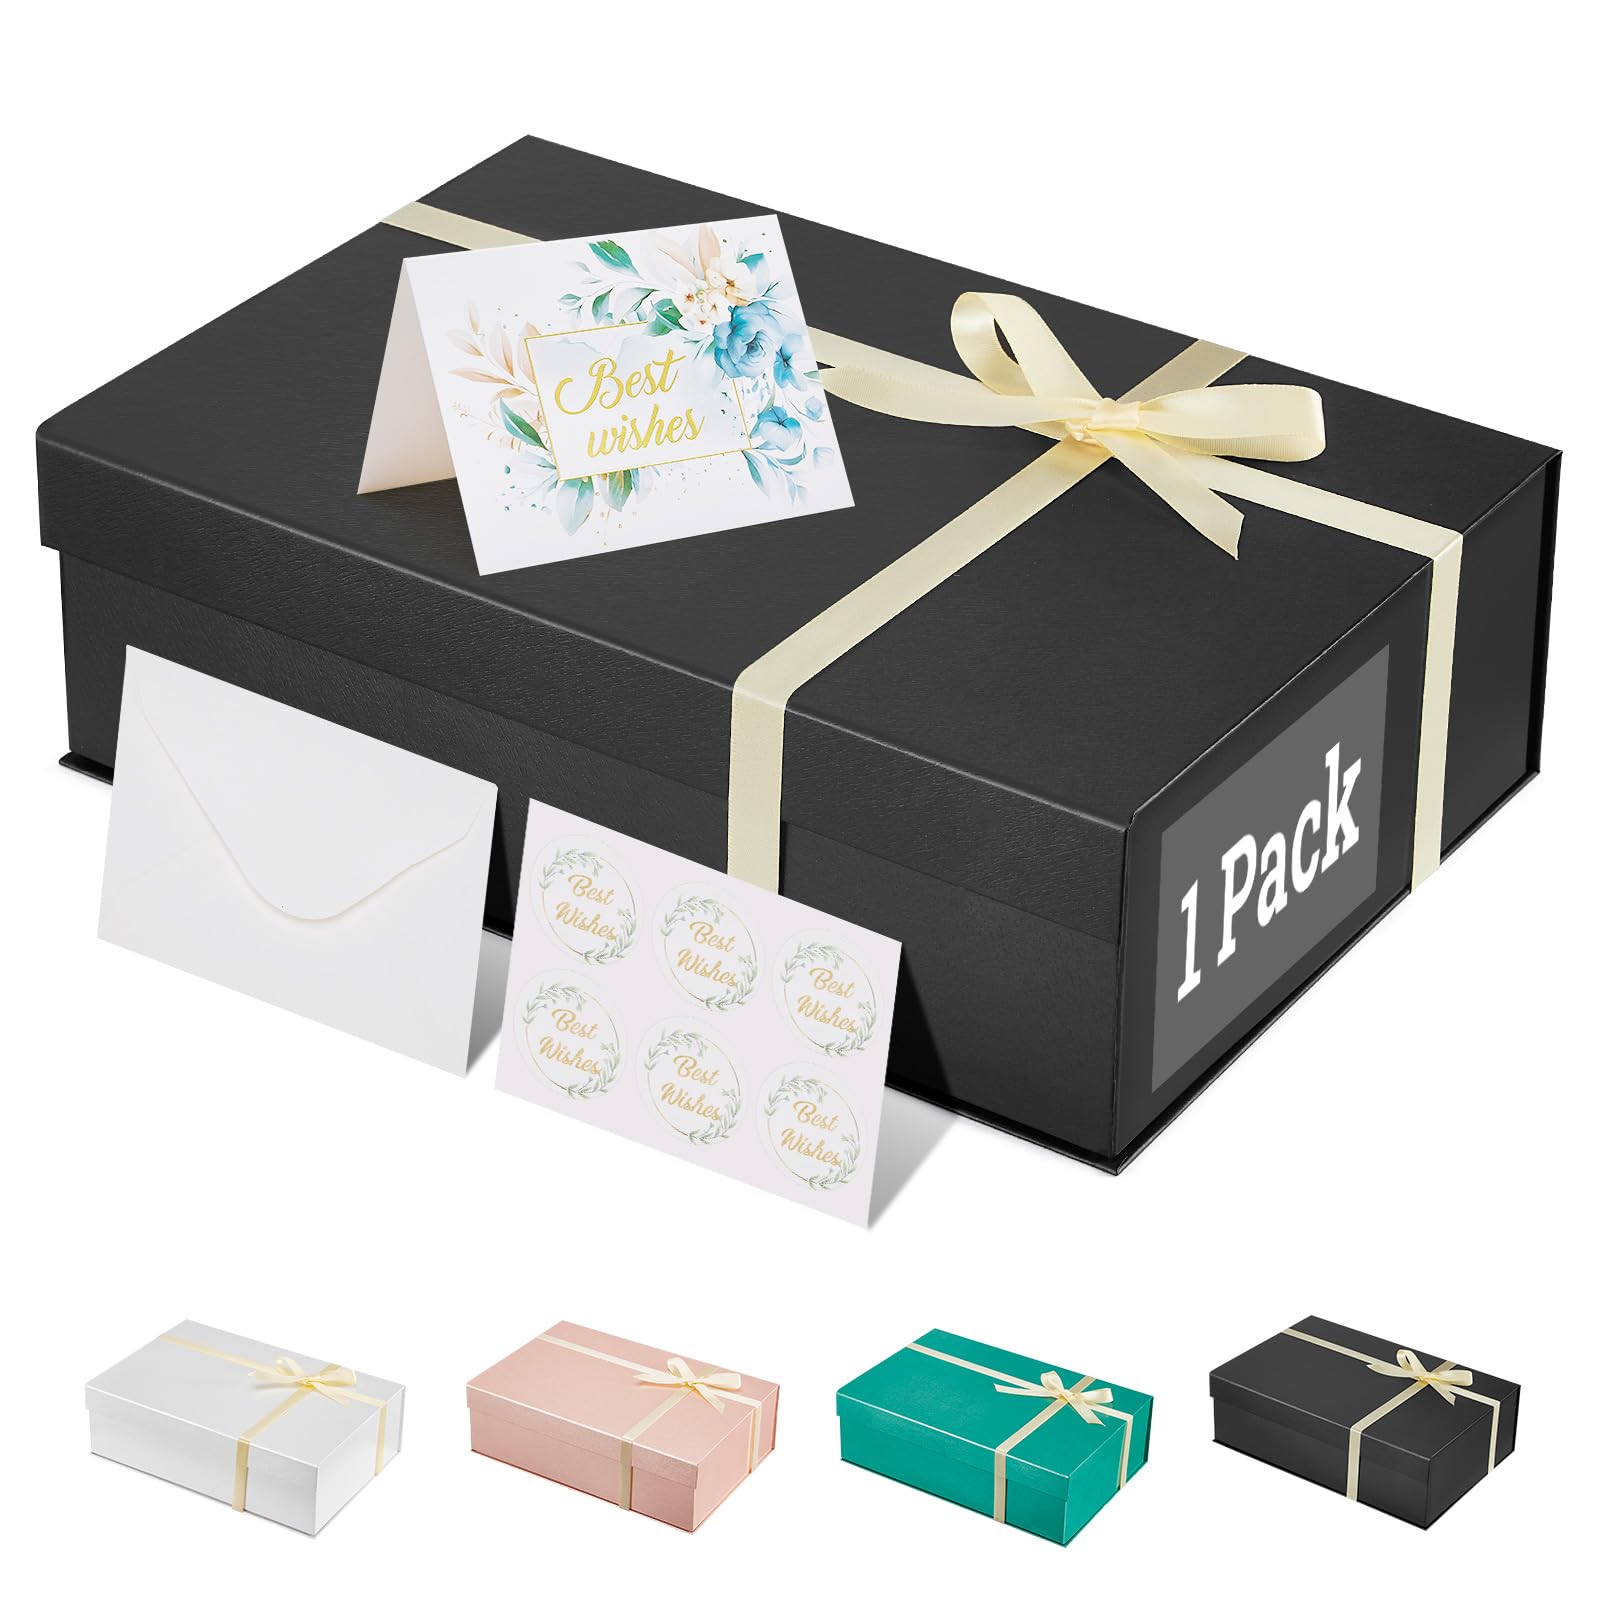 MESHA 13.5x9x4 1PC Black Gift Boxes & 11x8x3.5 1PC White Gift Boxes